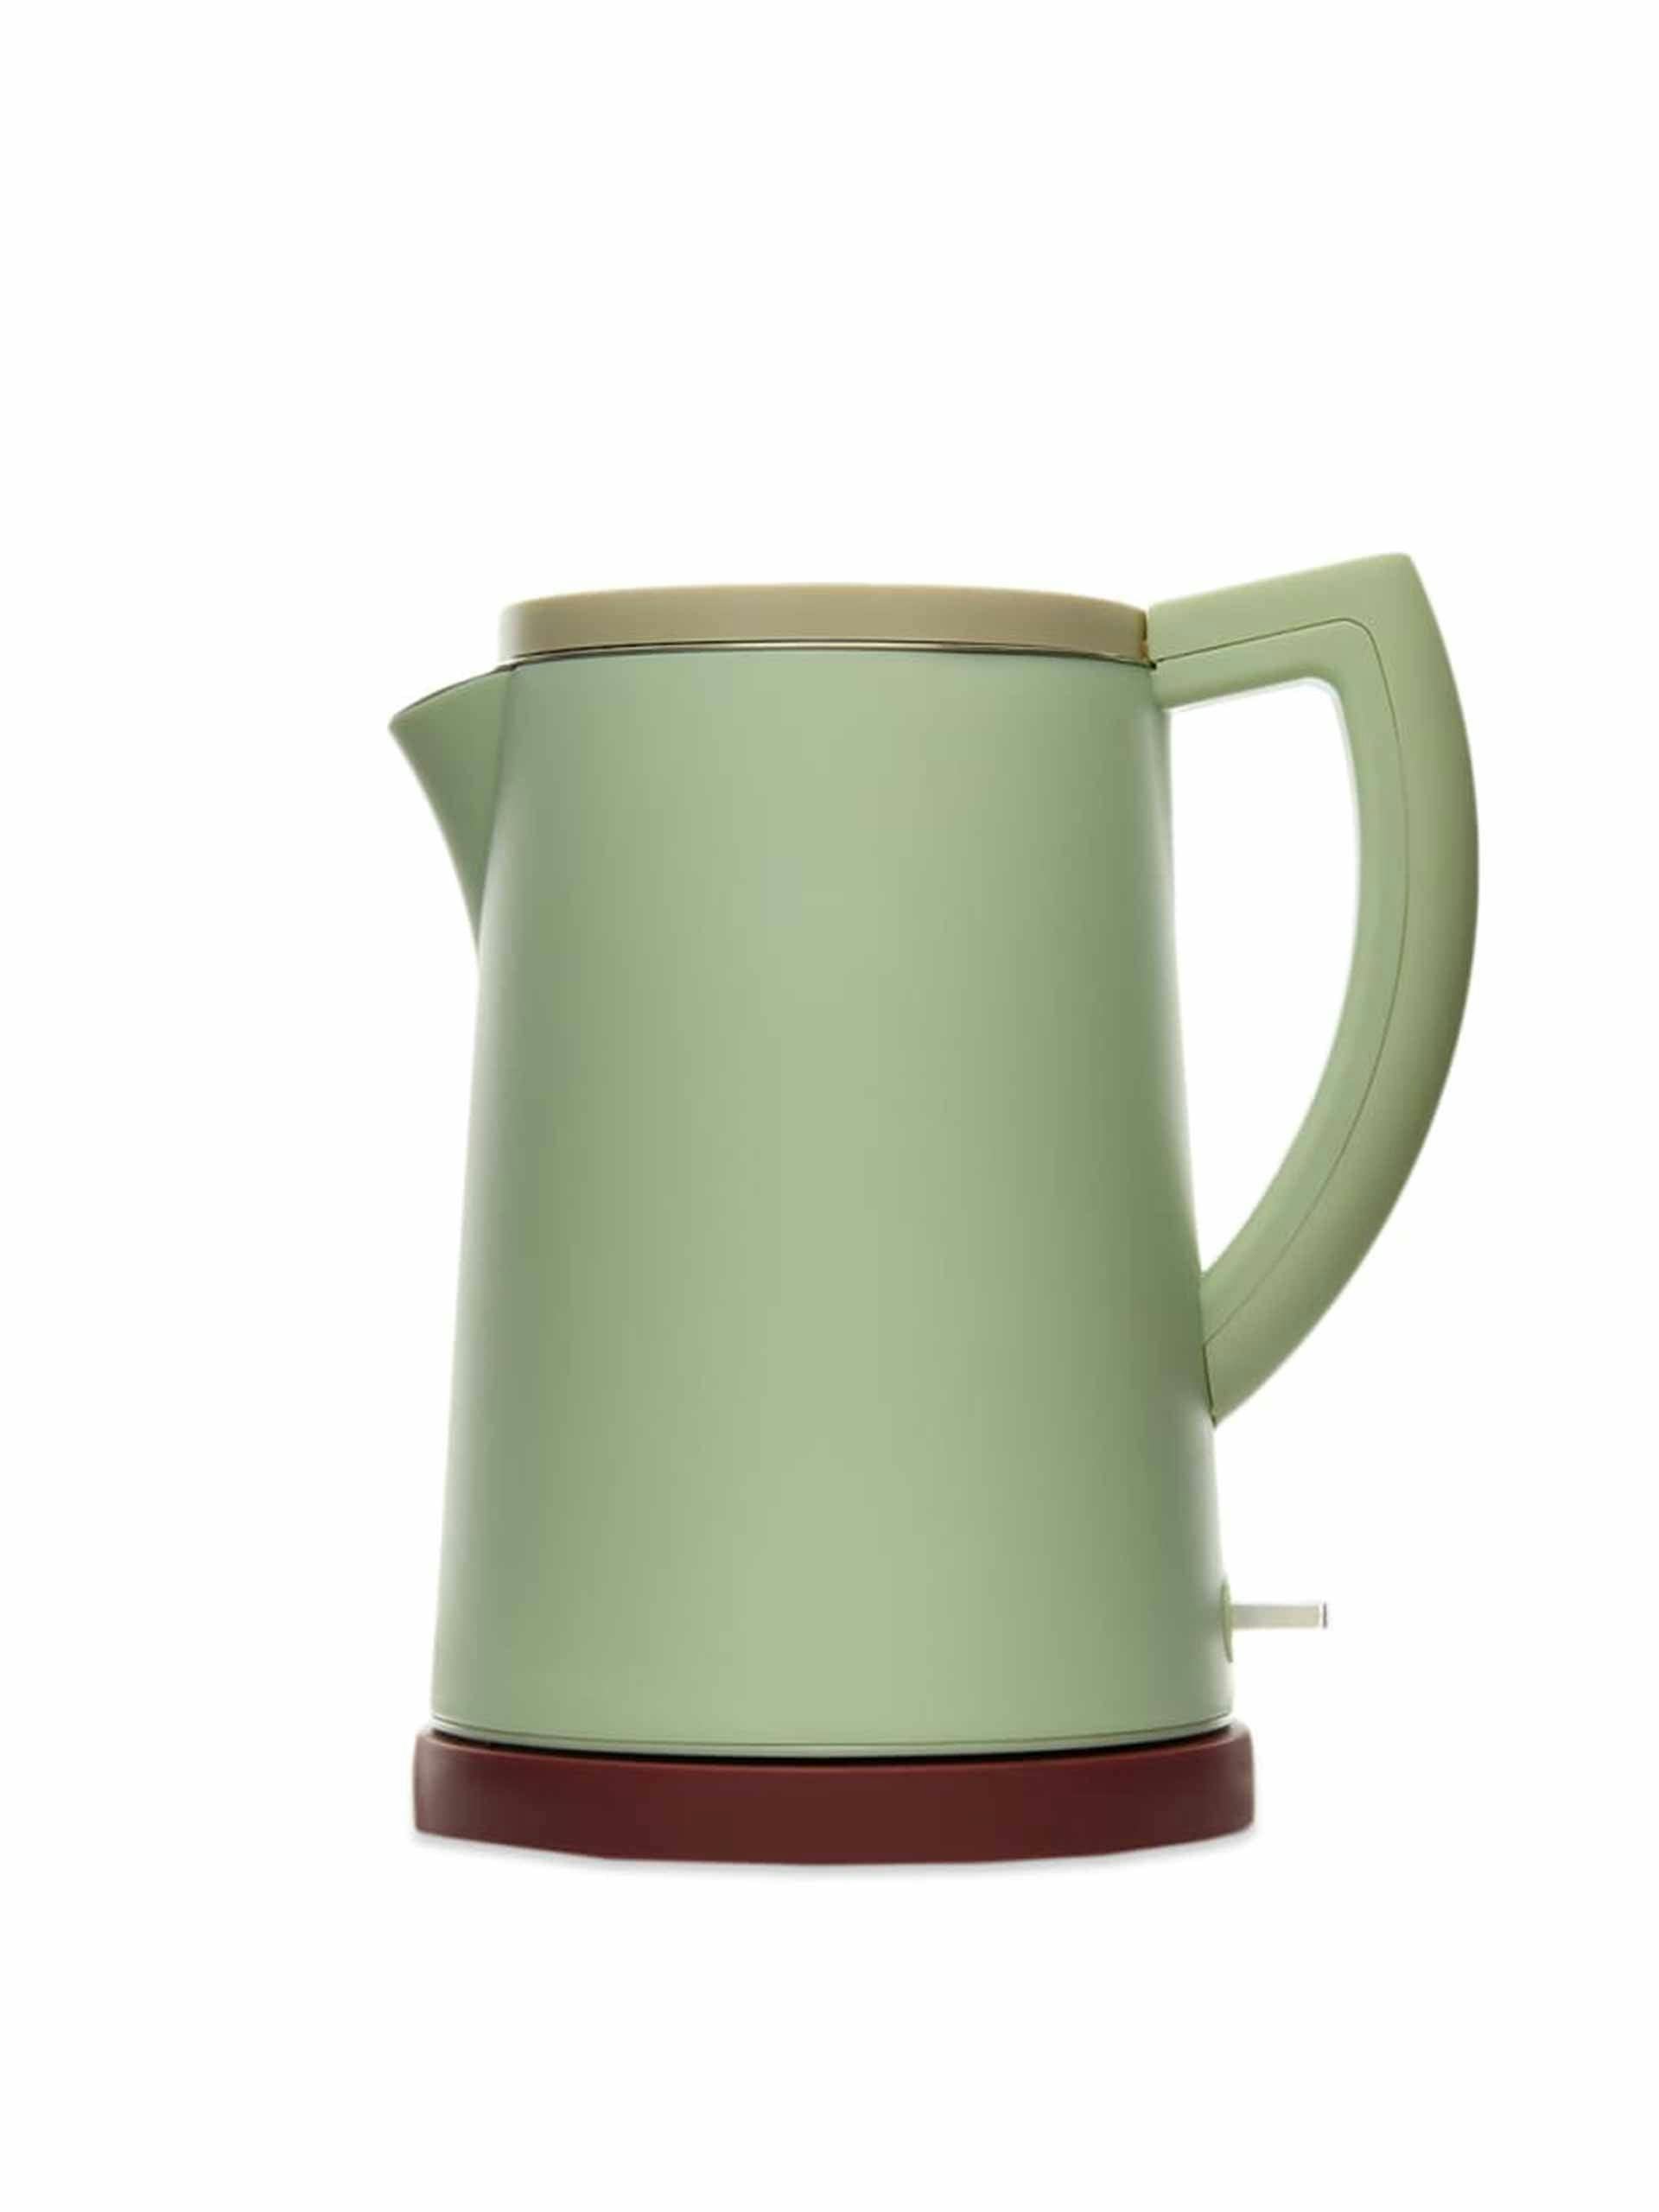 Mint green kettle